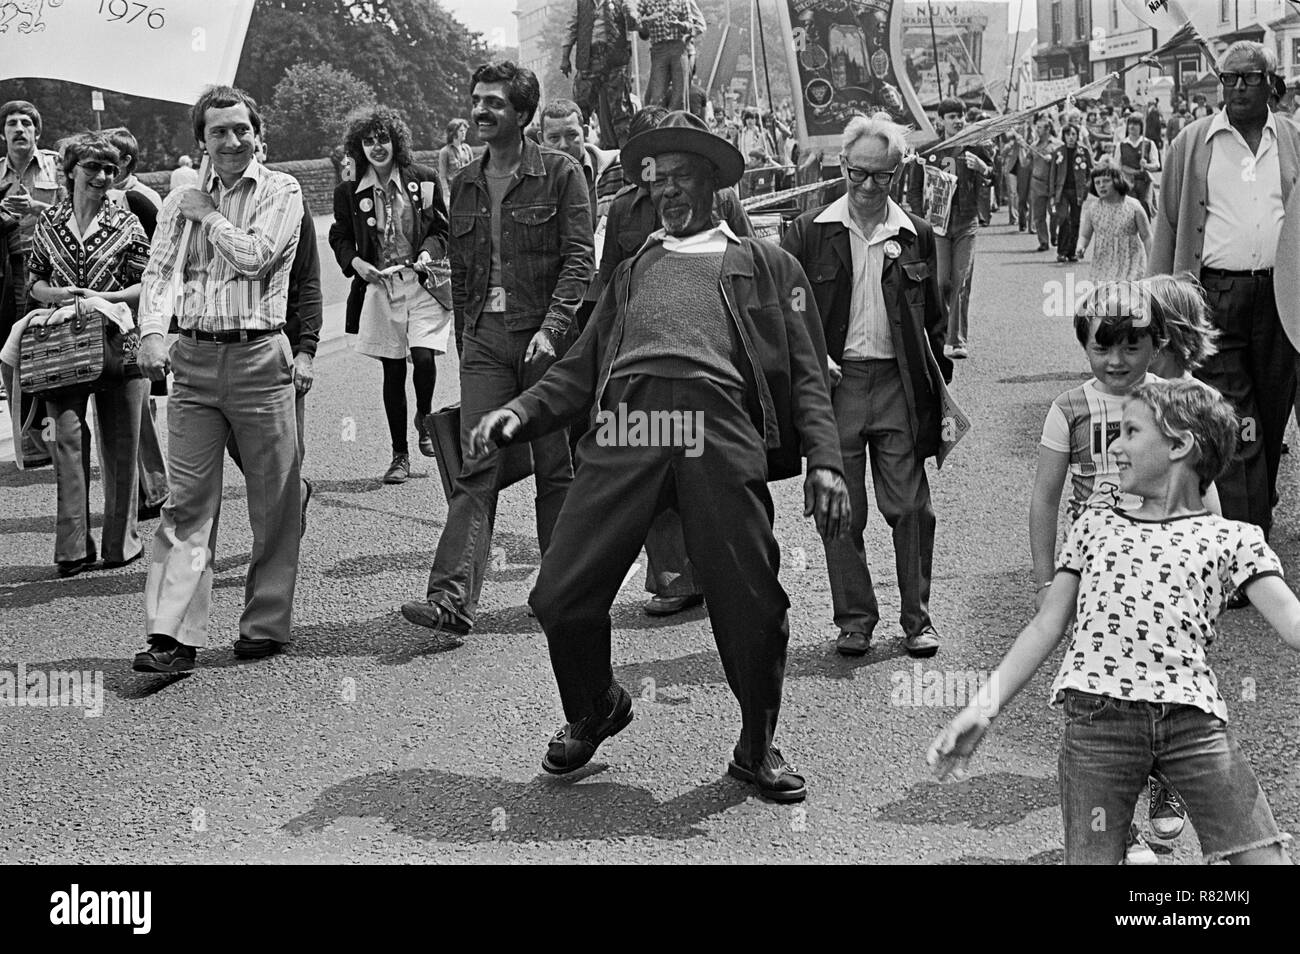 Un homme danse dans la rue, copiée par les enfants à la légère au moment d'une manifestation anti-racisme, Cardiff, Pays de Galles, 1978. Banque D'Images